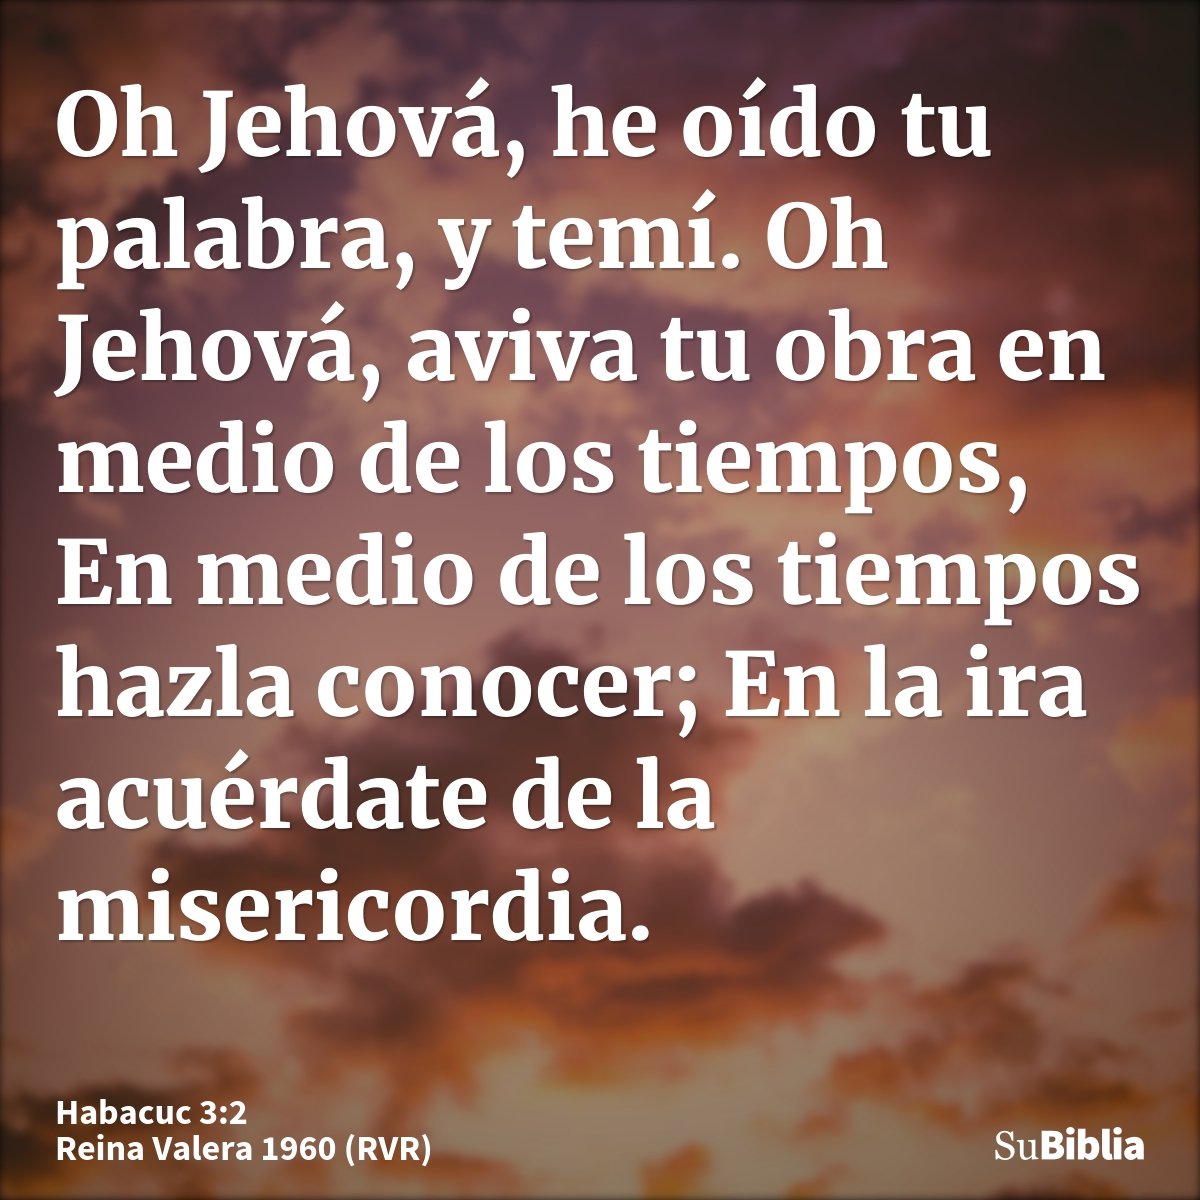 Oh Jehová, he oído tu palabra, y temí. Oh Jehová, aviva tu obra en medio de los tiempos, En medio de los tiempos hazla conocer; En la ira acuérdate de la miseri...